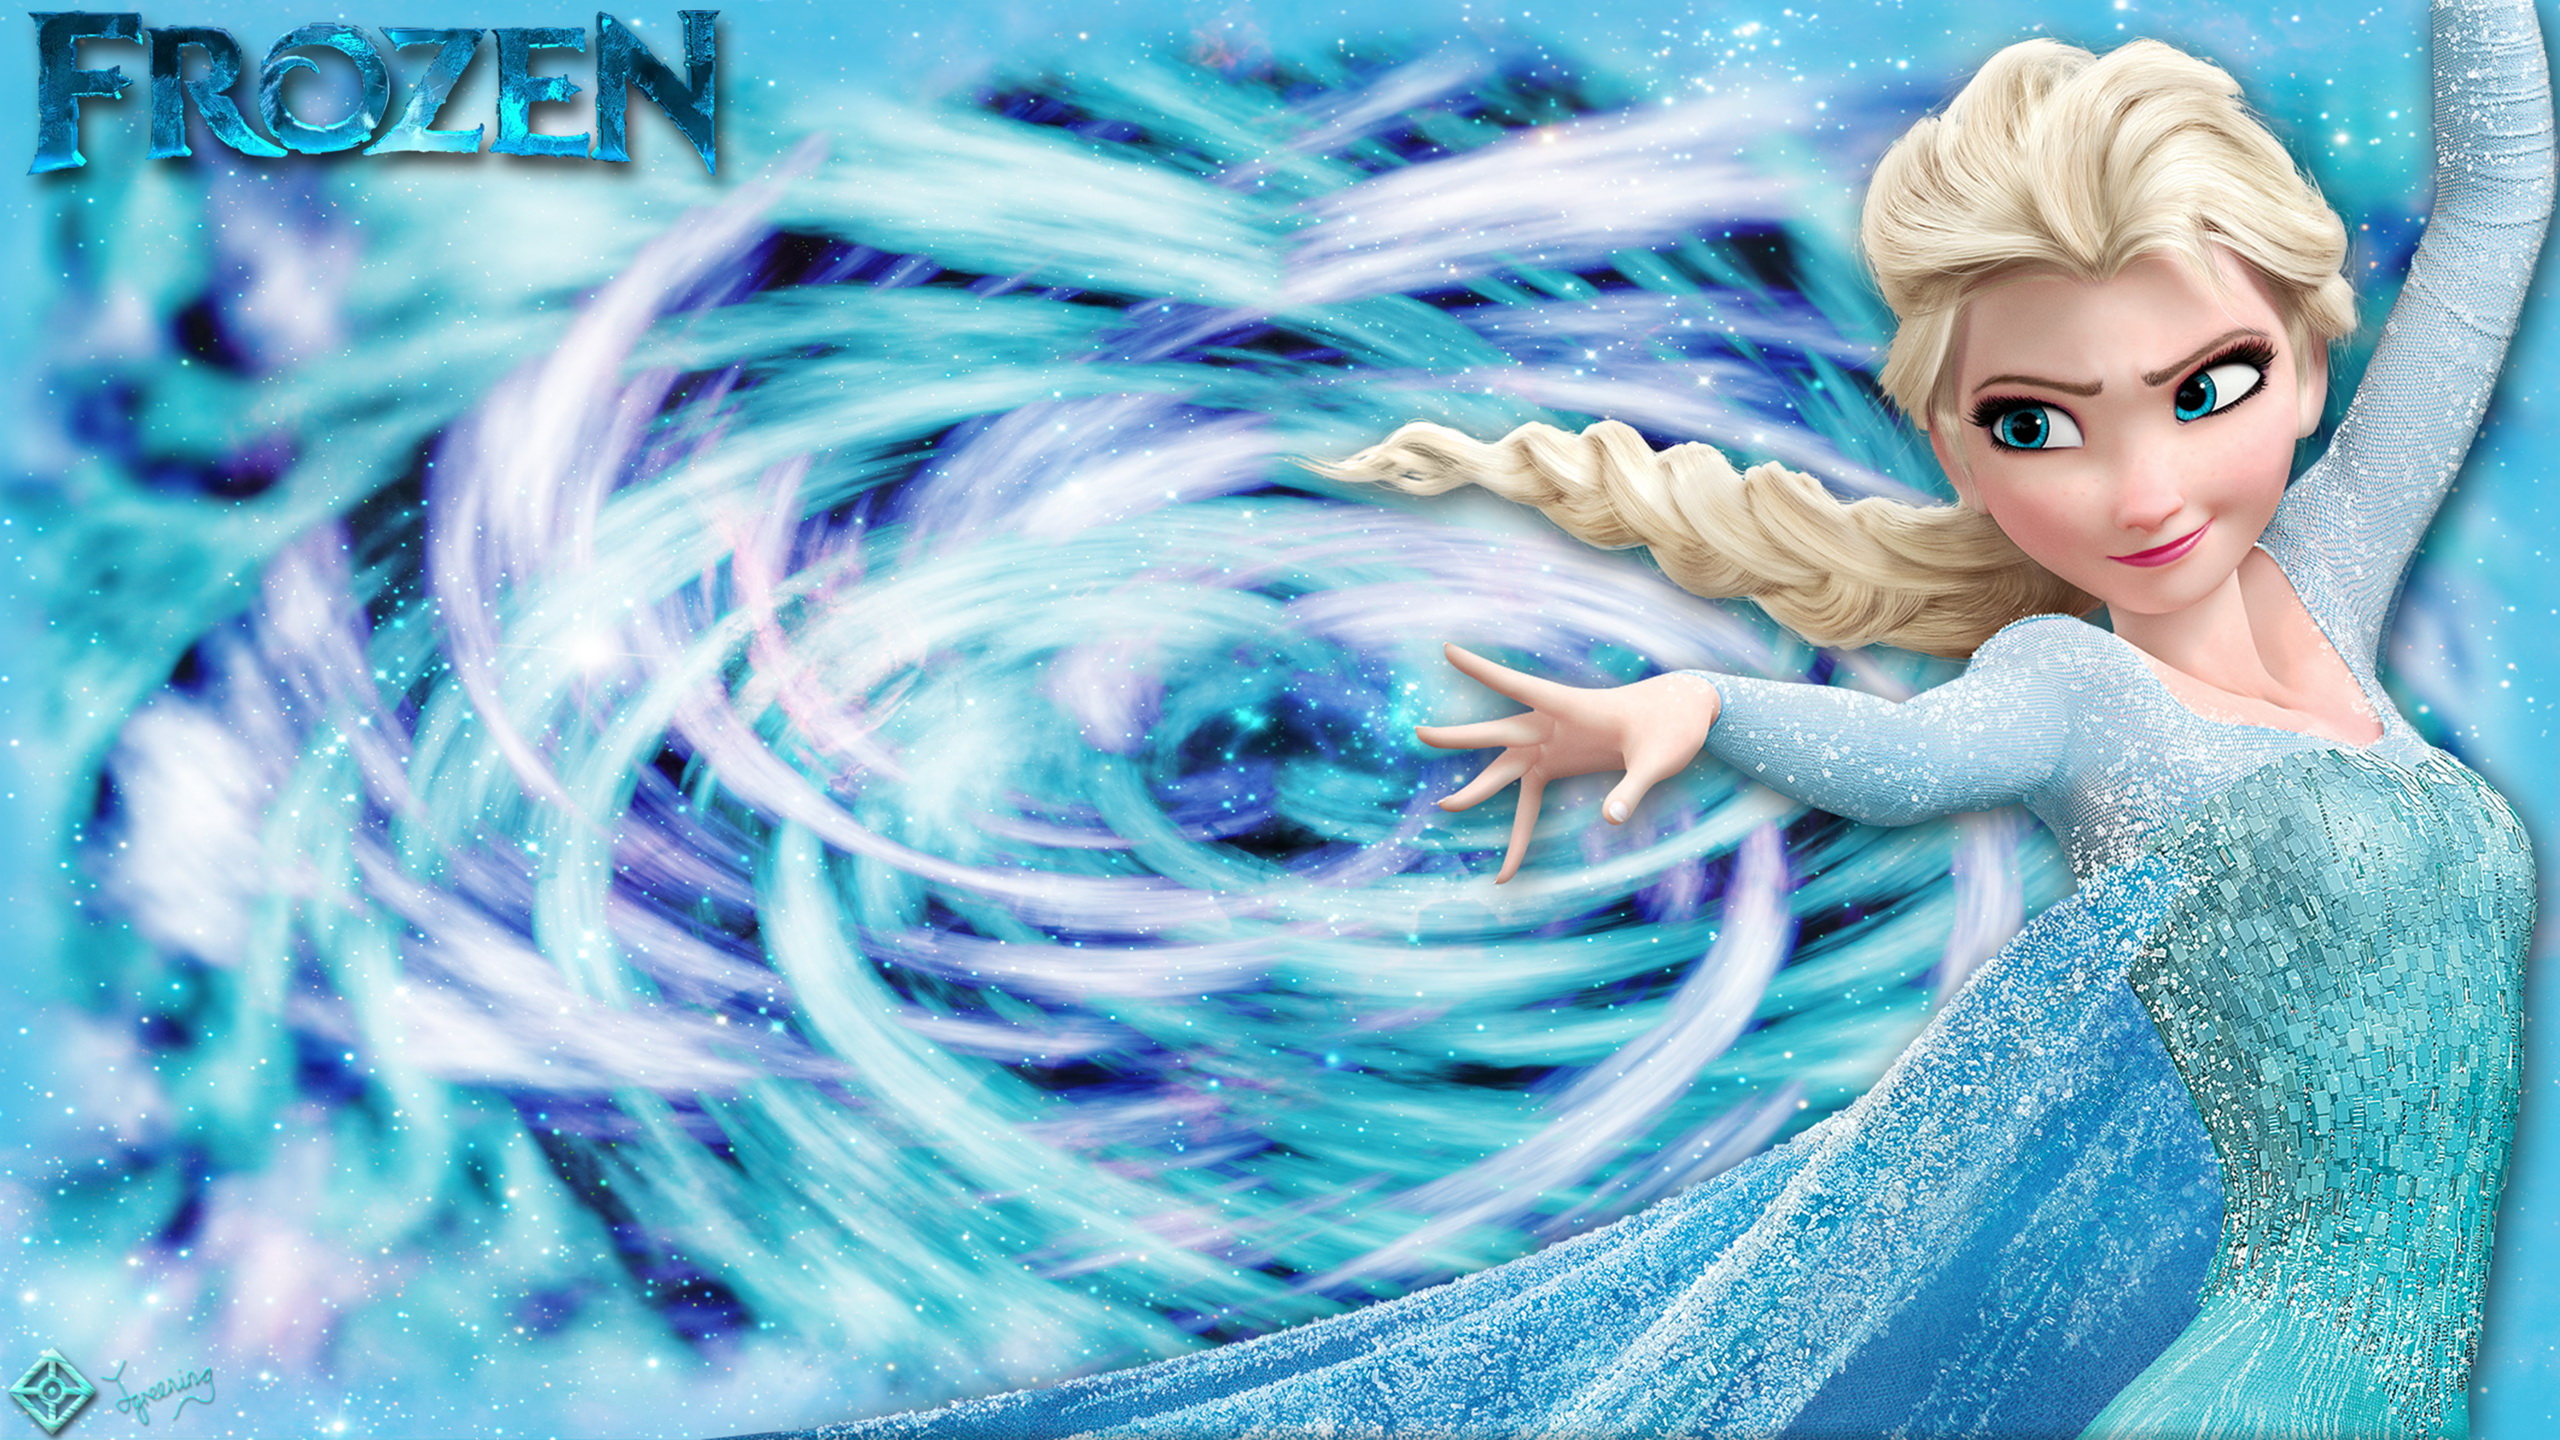 Ảnh nền Elsa phim Frozen đẹp